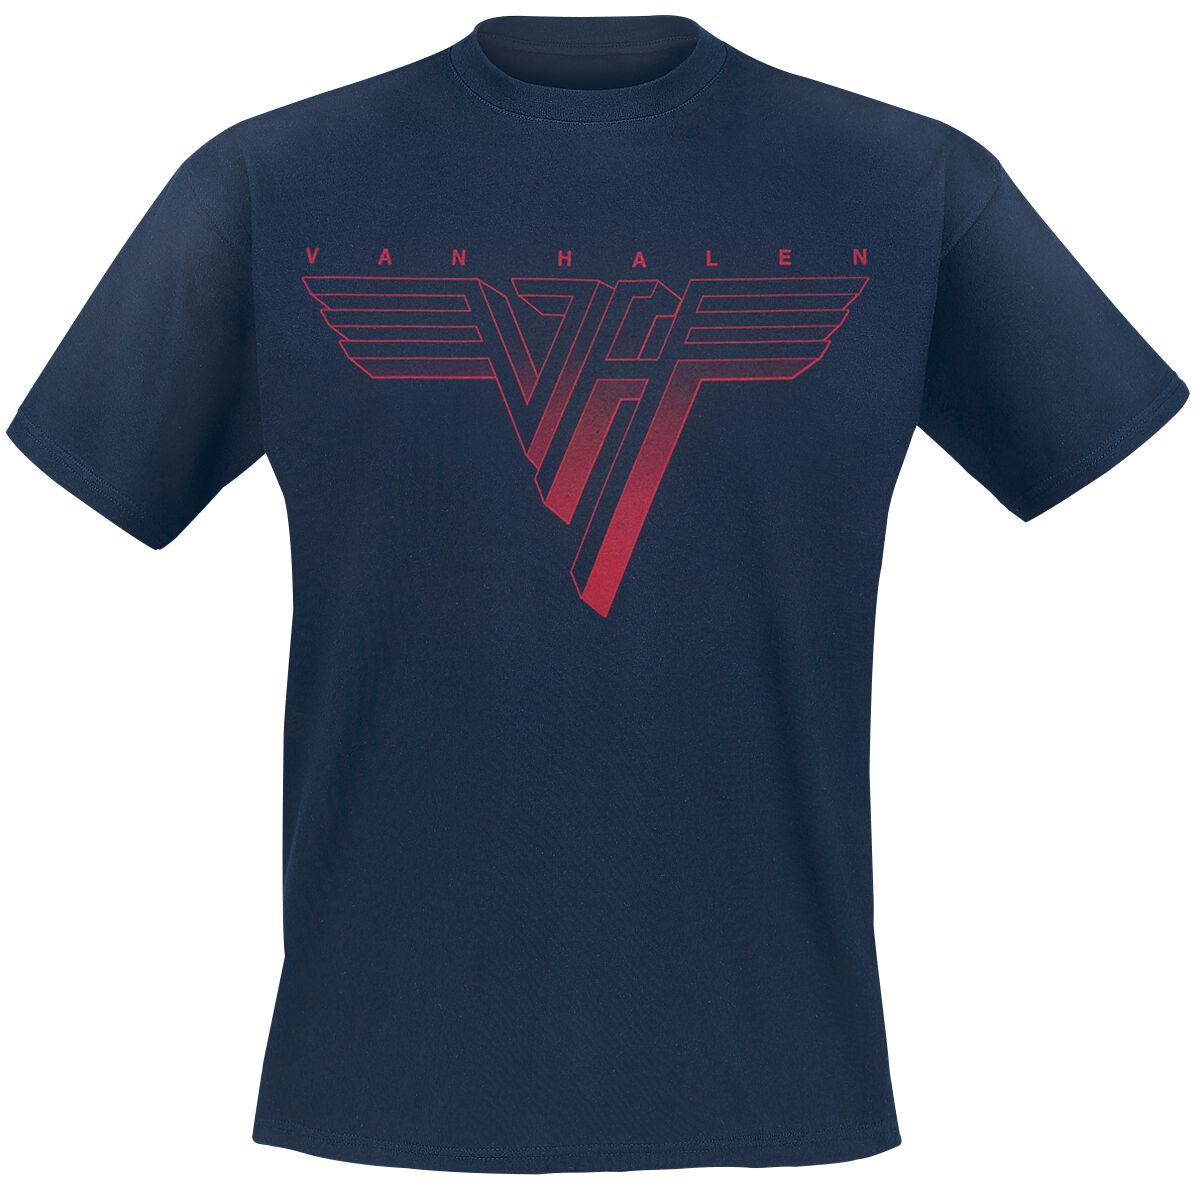 Van Halen T-Shirt - Classic Red Logo - S bis 3XL - für Männer - Größe 3XL - navy  - Lizenziertes Merchandise!